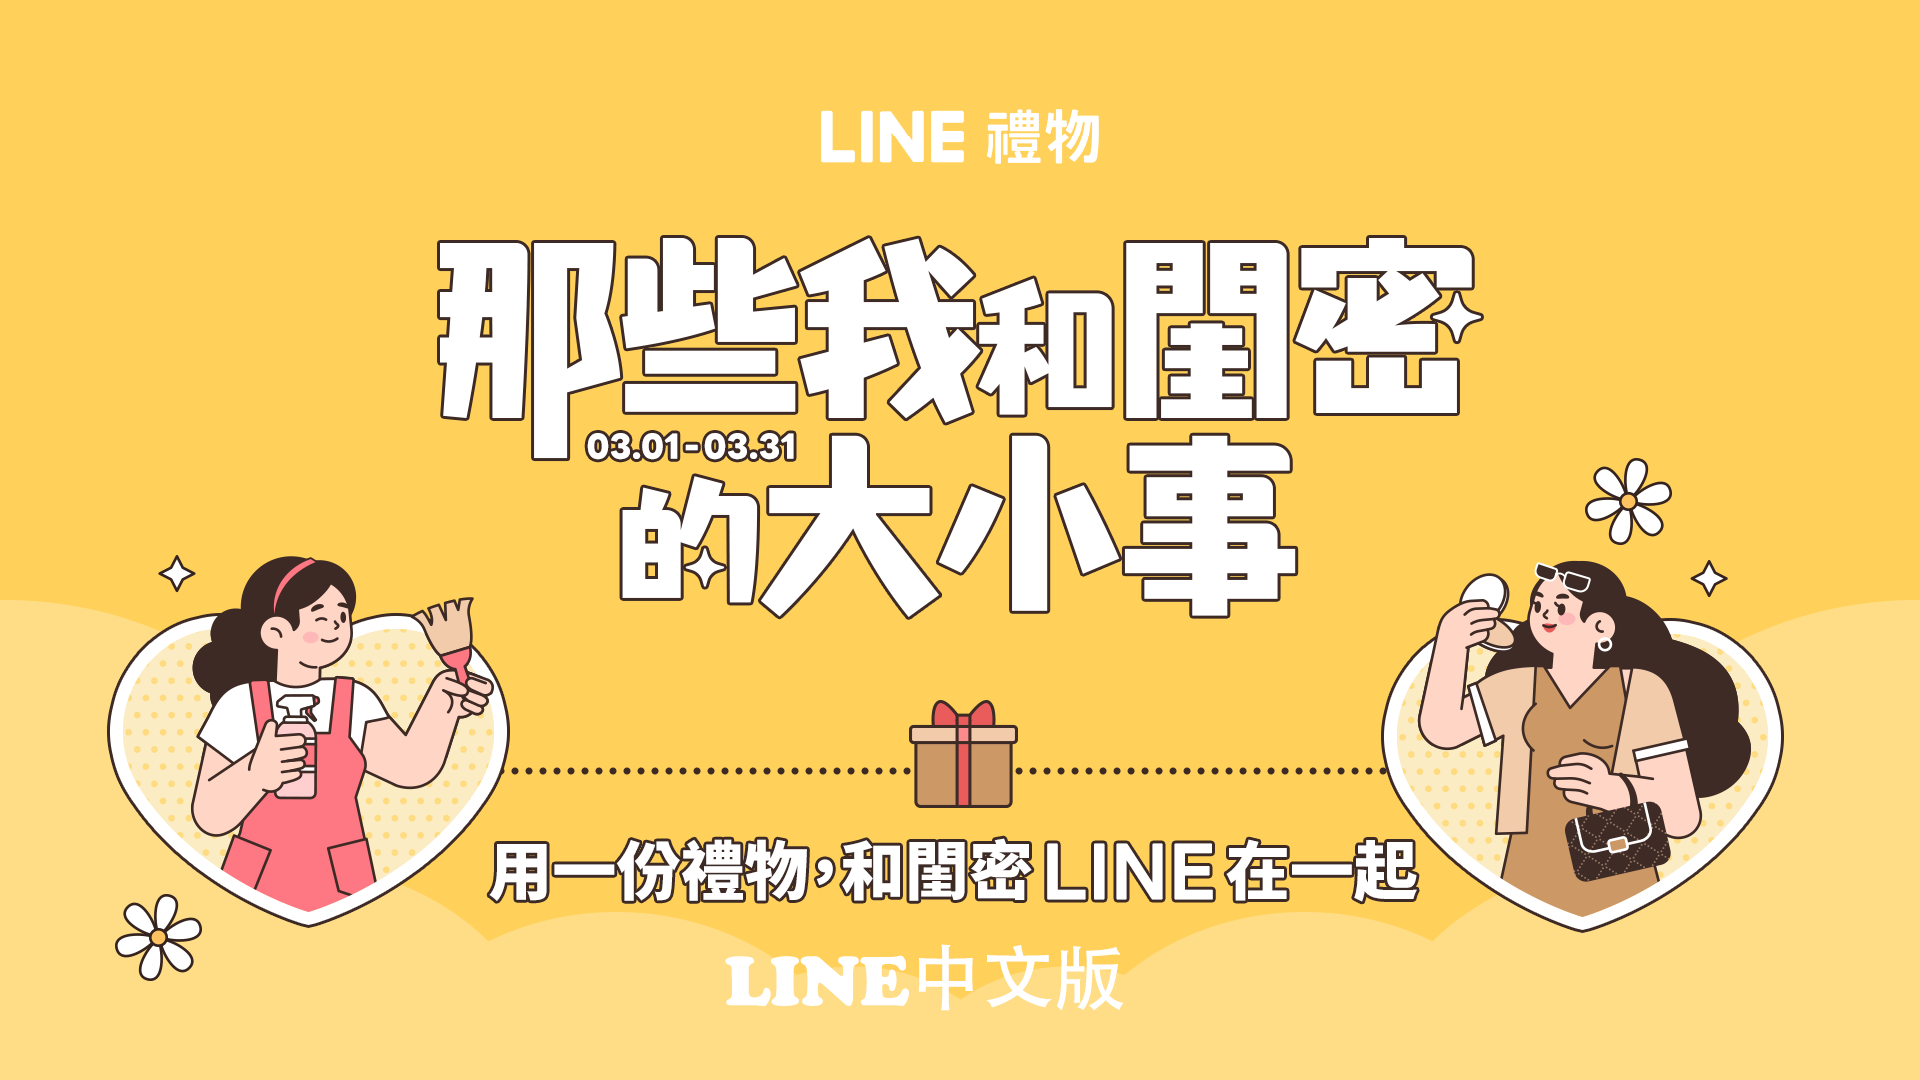 LINE礼物推出「那些我和闺密的大小事」-LINE中文版